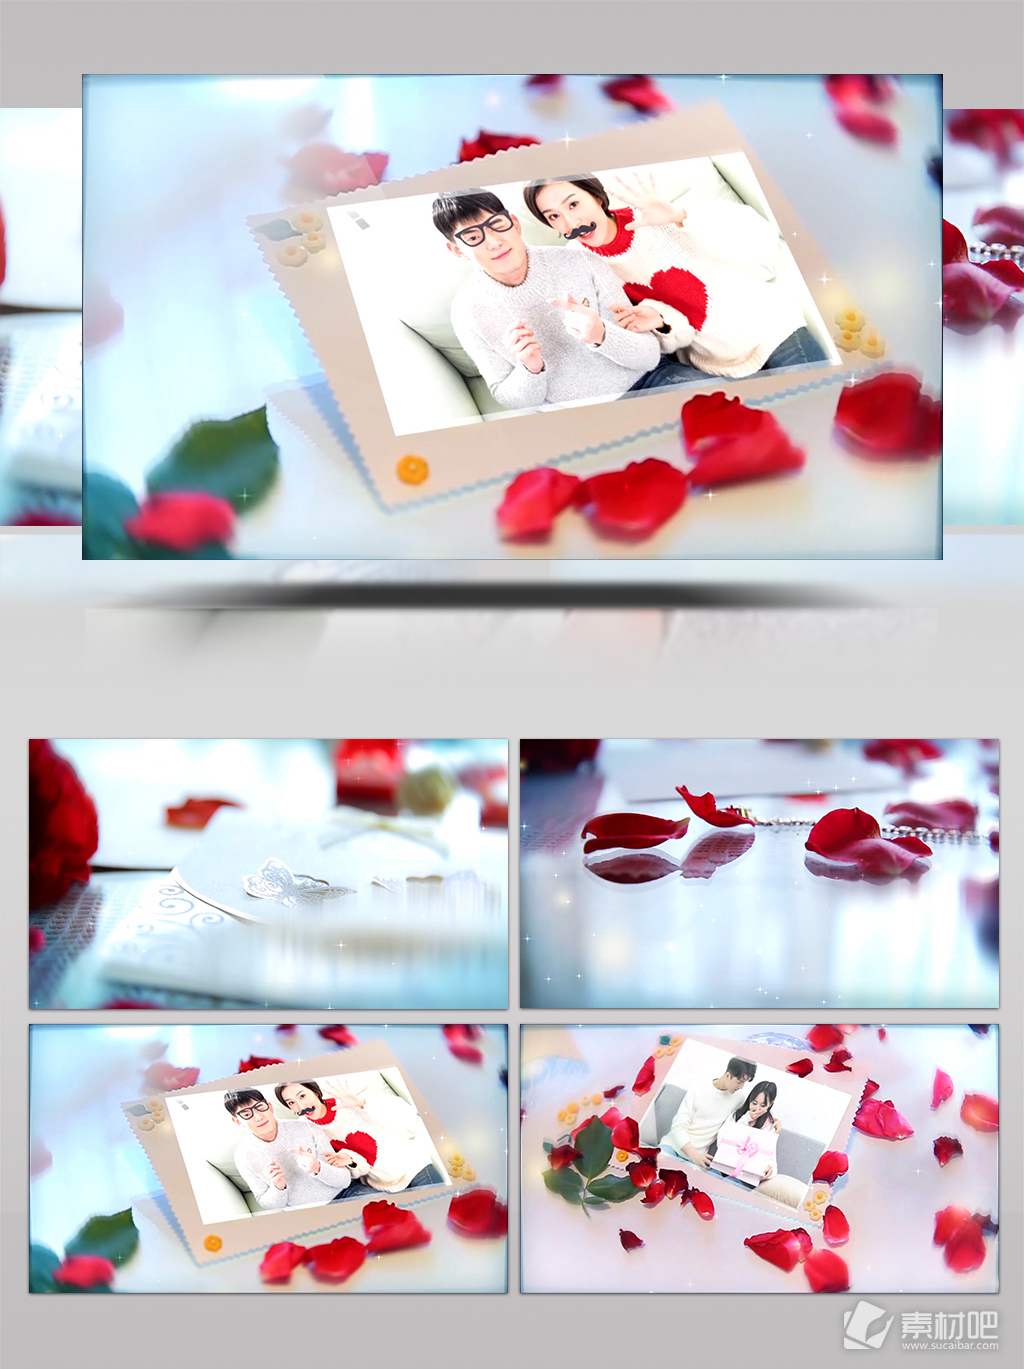 唯美浪漫的玫瑰花瓣散落的爱情婚礼相册模板